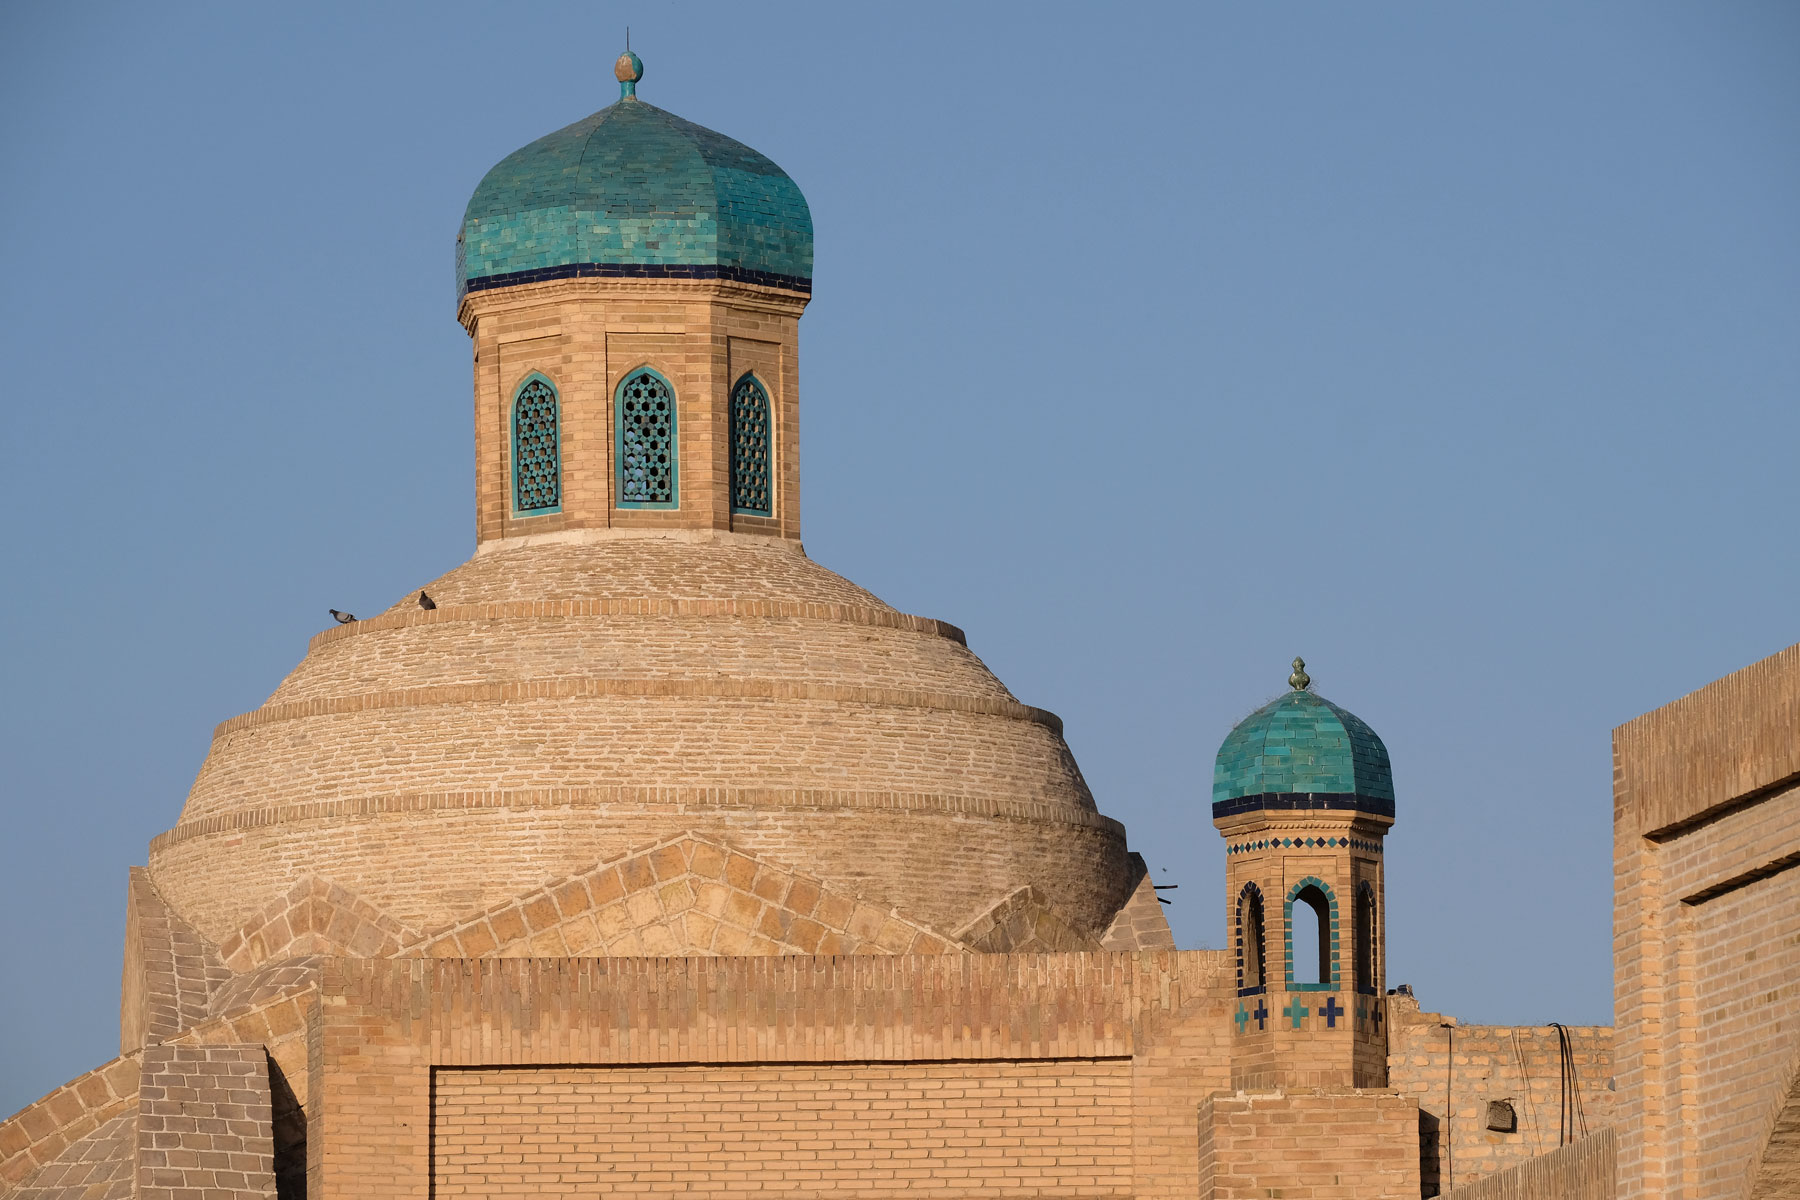 Sandsteinfarbene Gebäude mit türkisfarbenen Kuppeln